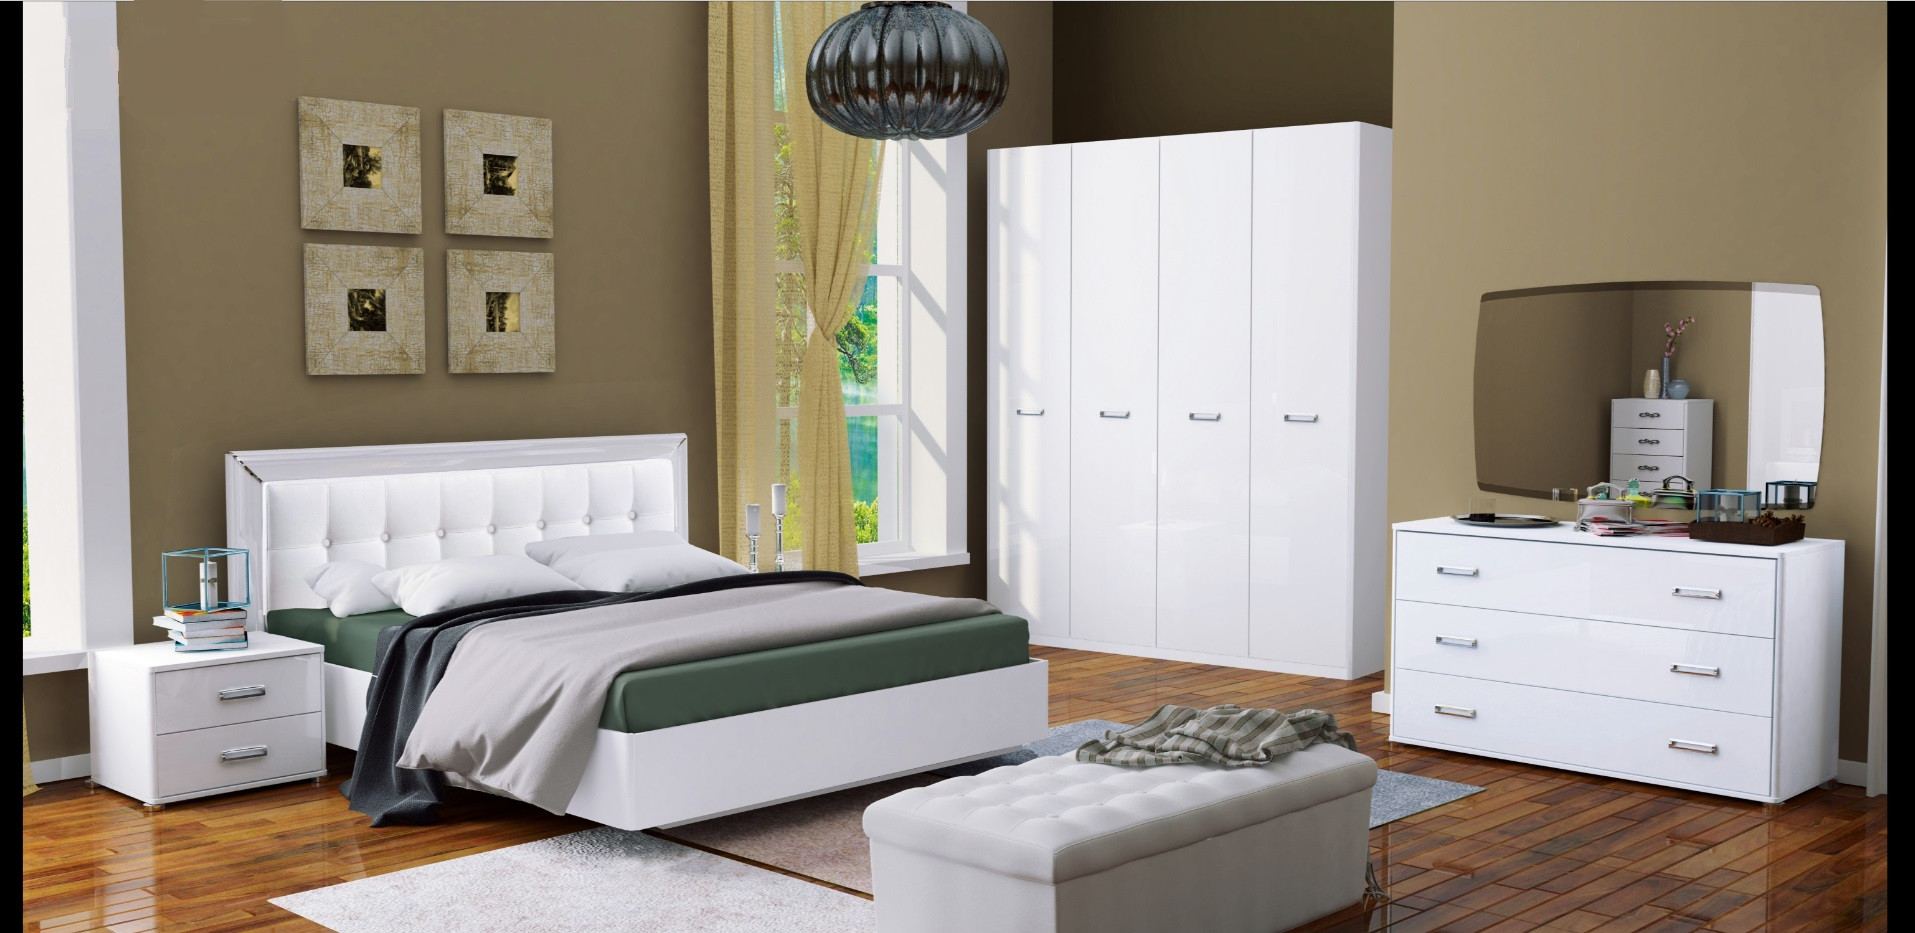 Juego de cama blanco BELLA + 2 mesillas + cómoda + armario